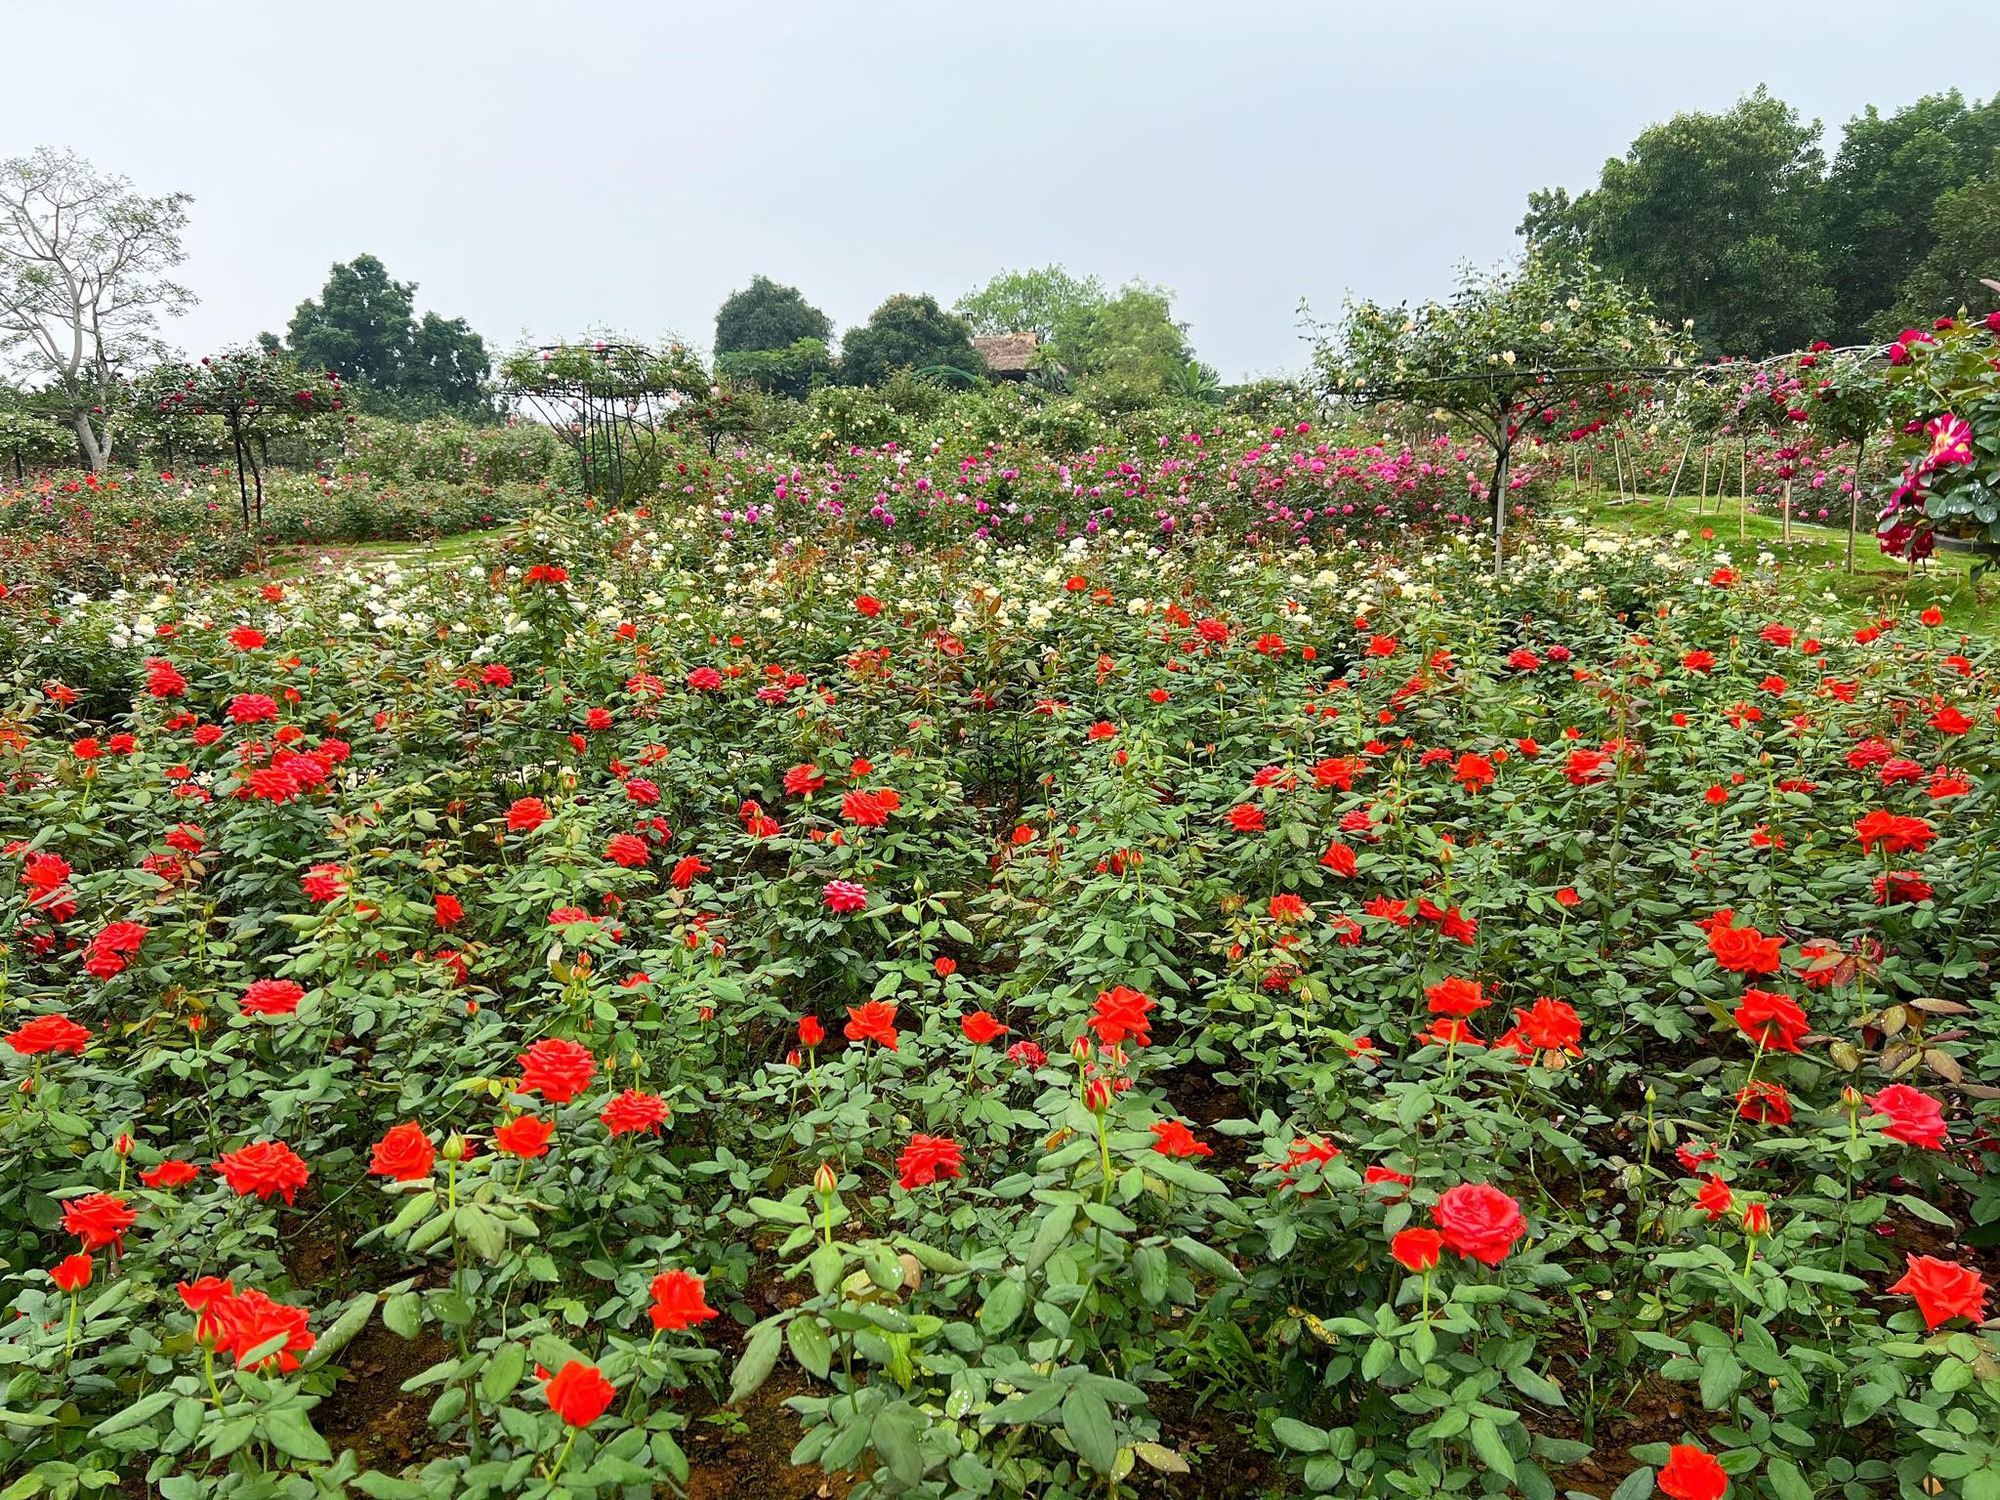 Mùng 3 Tết đến thăm vườn hồng rộng 6.000m² của người phụ nữ Hà Nội - Ảnh 10.